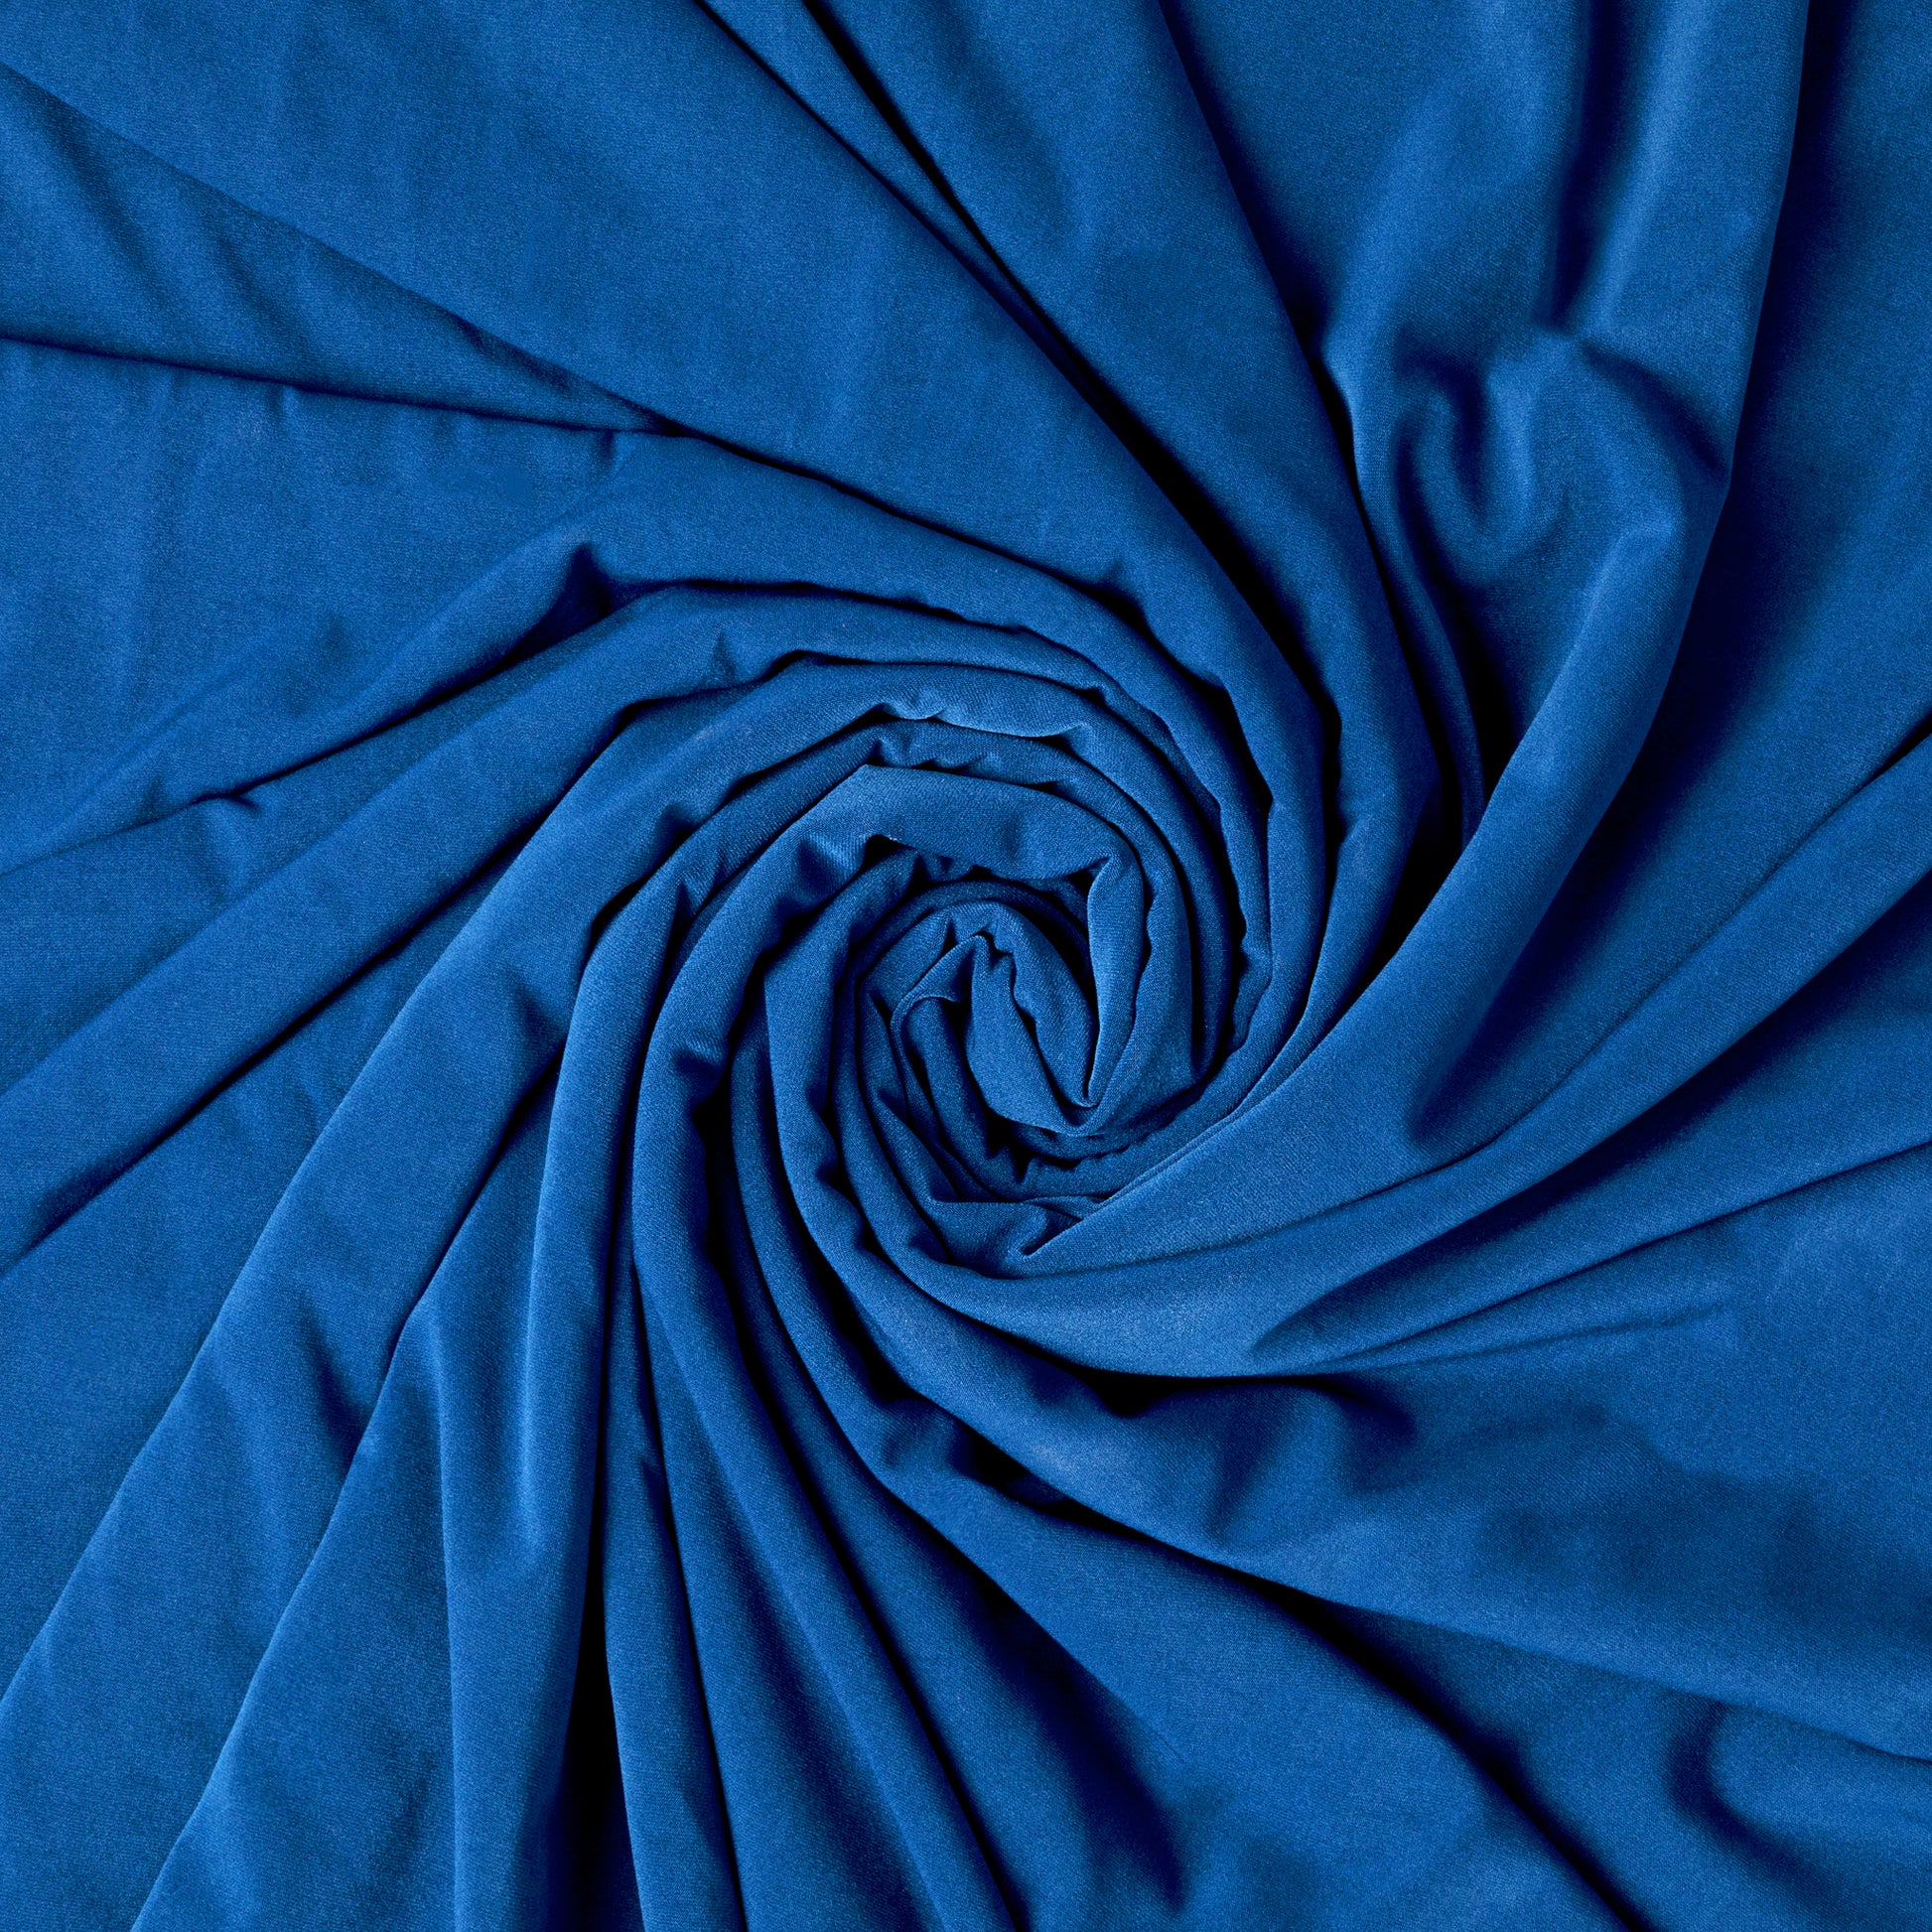 https://www.cvlinens.com/cdn/shop/products/Spandex-Stretch-4-way-Fabric-Roll-10-Yards-Royal-Blue.jpg?v=1677087027&width=1946